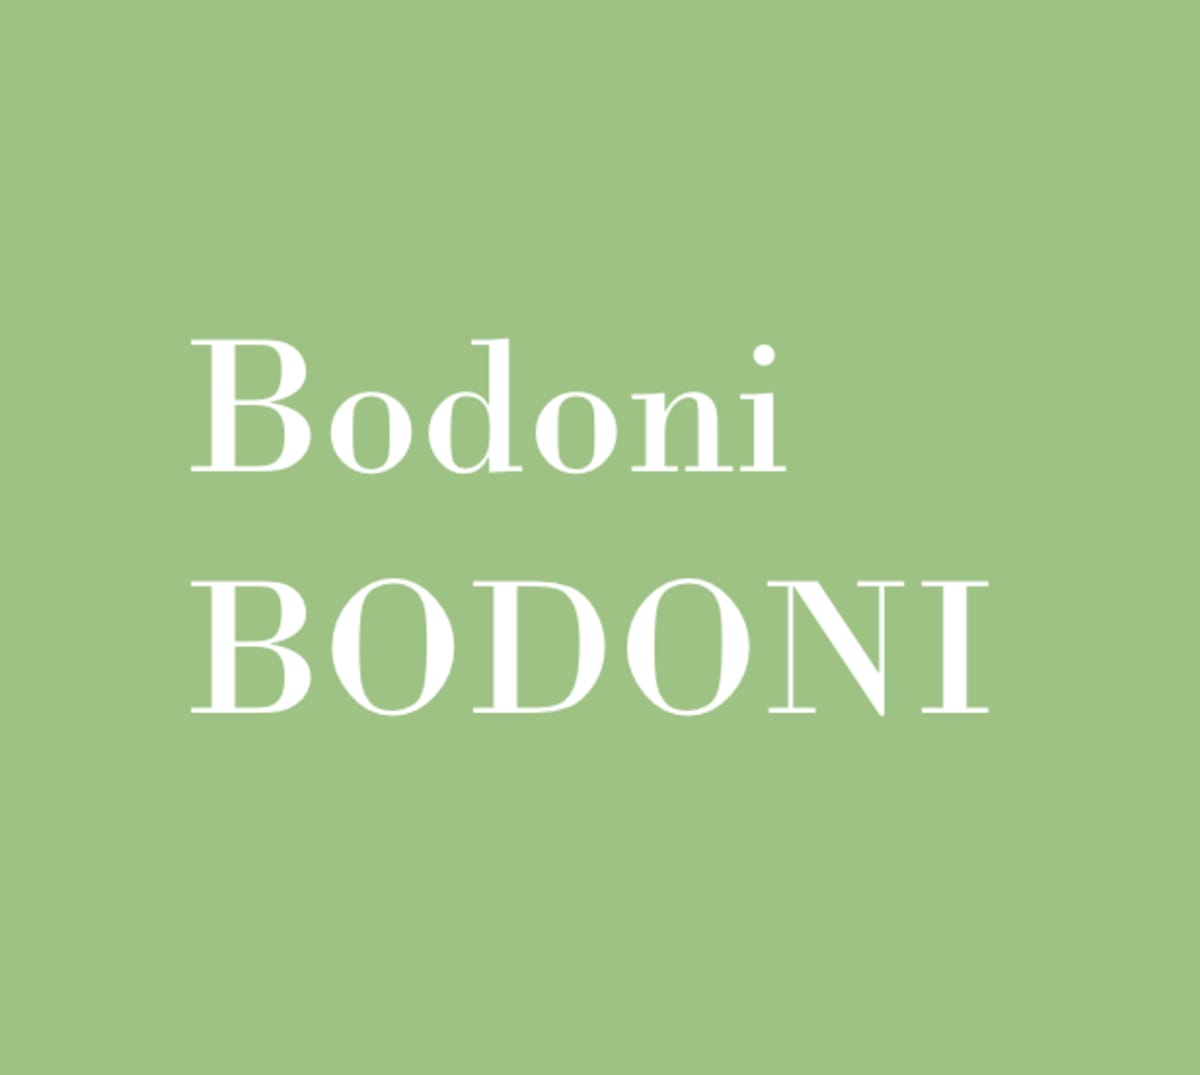 bodoni font - logo fonts